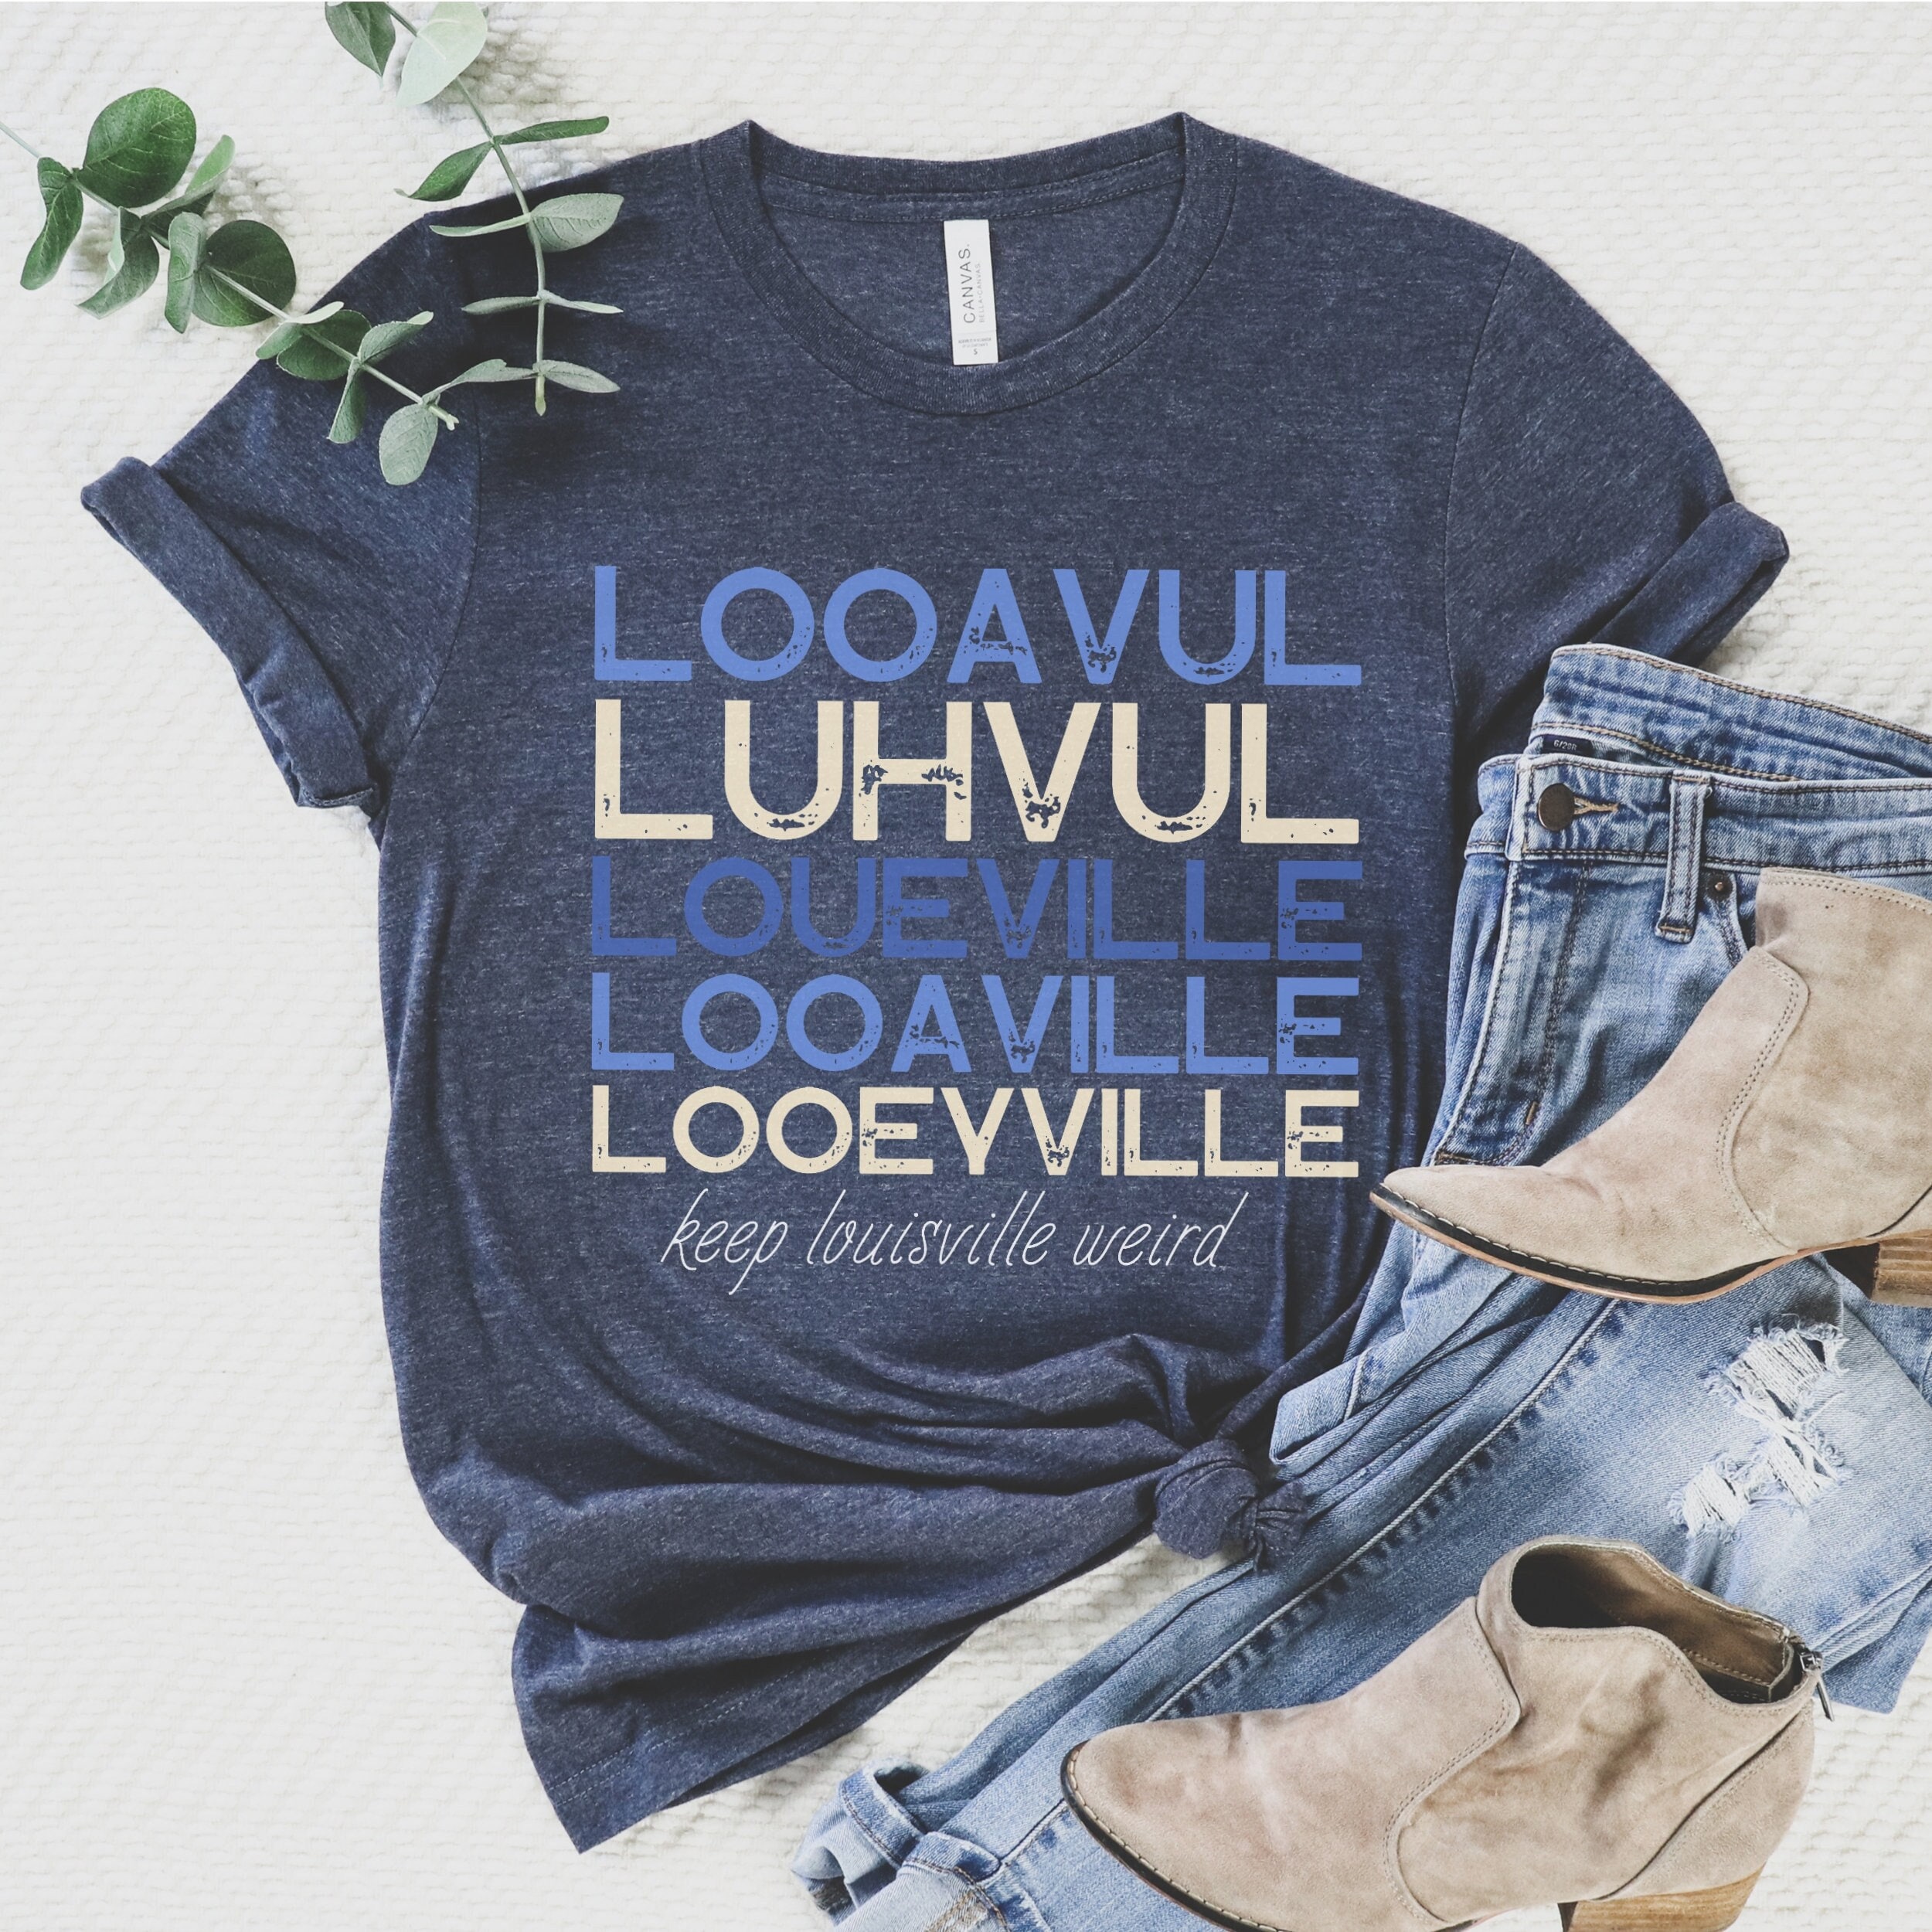 Lousiville Kentucky Shirt Funny Louisville Shirt Love 